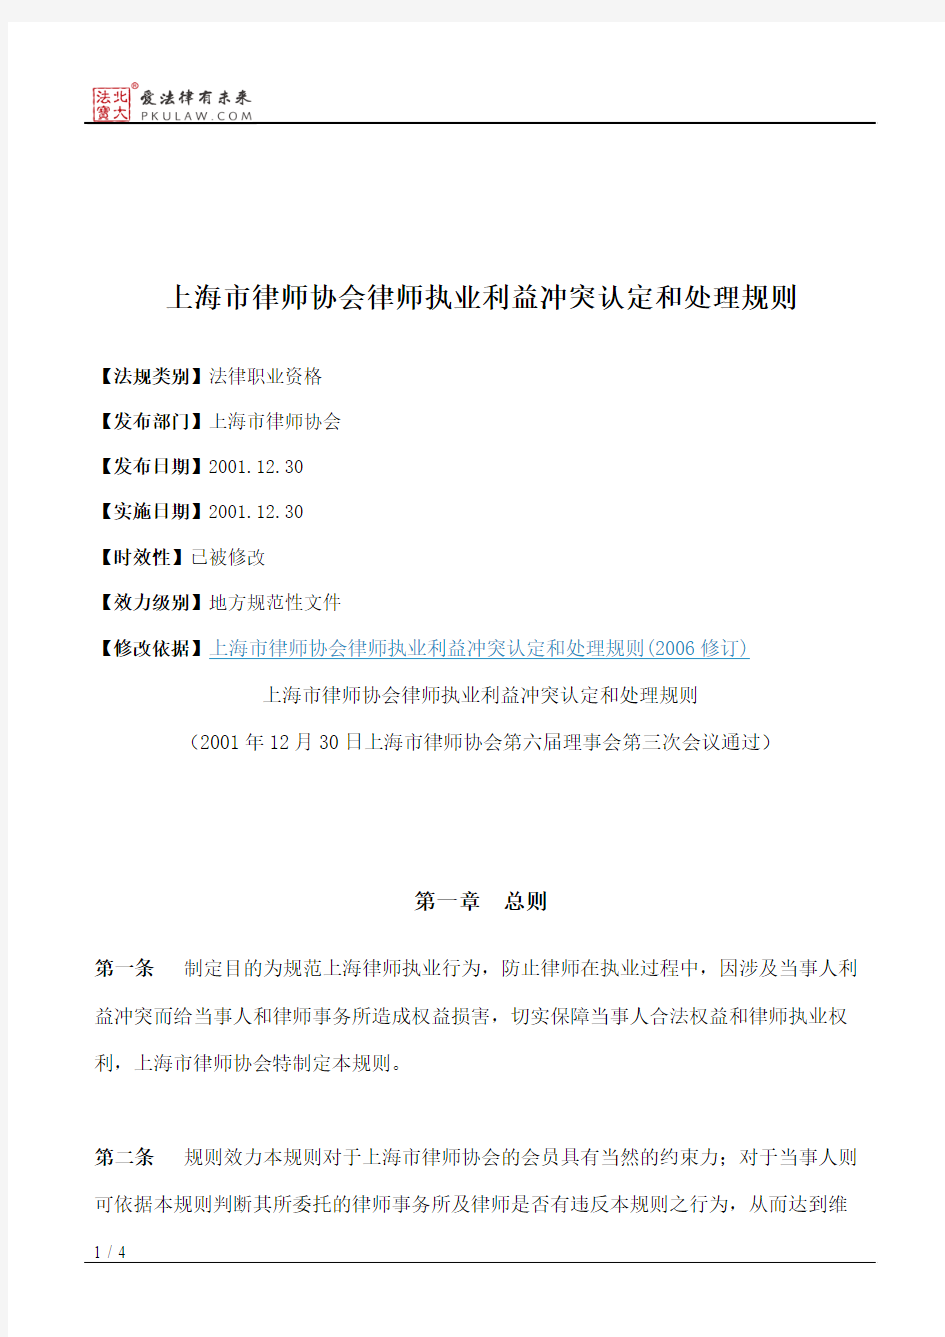 上海市律师协会律师执业利益冲突认定和处理规则